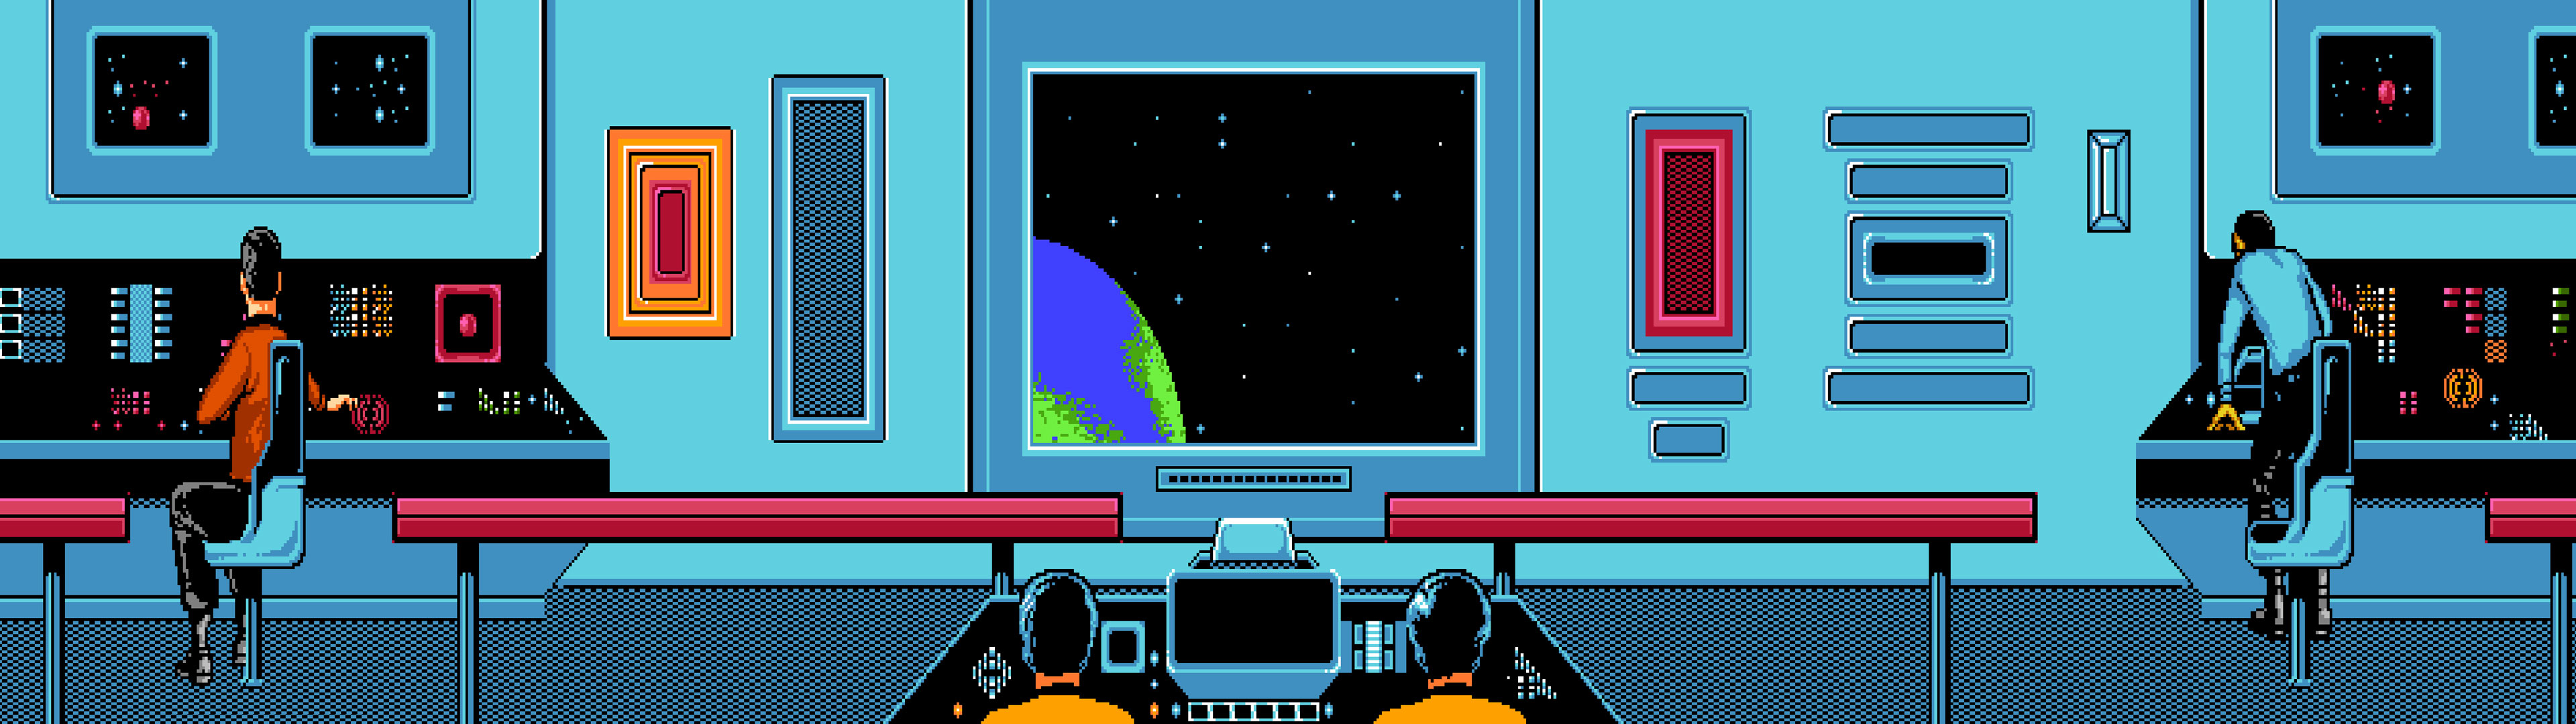 Multi Monitor Dual Screen Video Games Retro Classic Sci